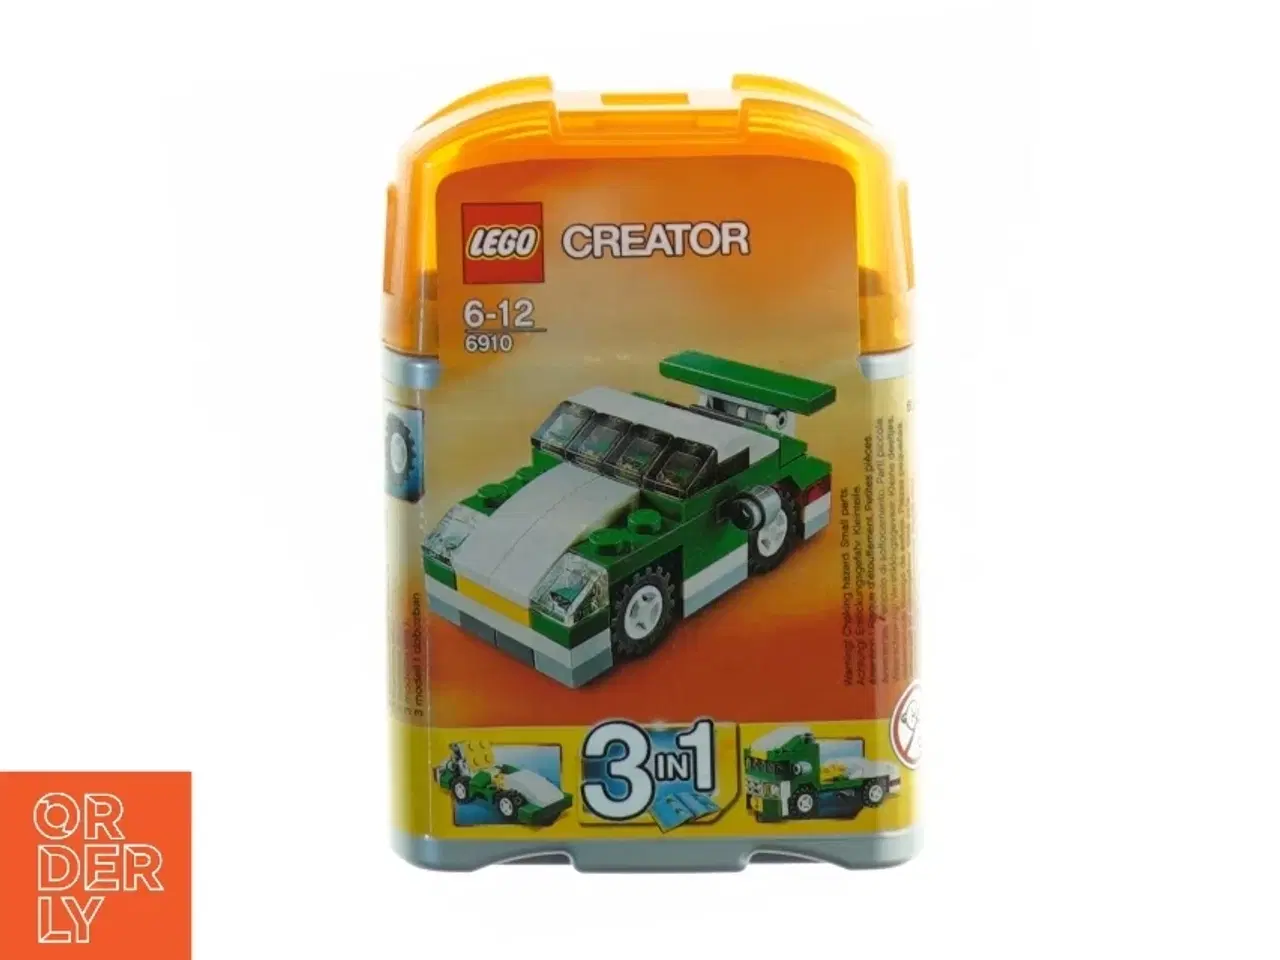 Billede 1 - LEGO Creator 6910 Mini Sports Car fra LEGO (str. 14 x 10 cm)